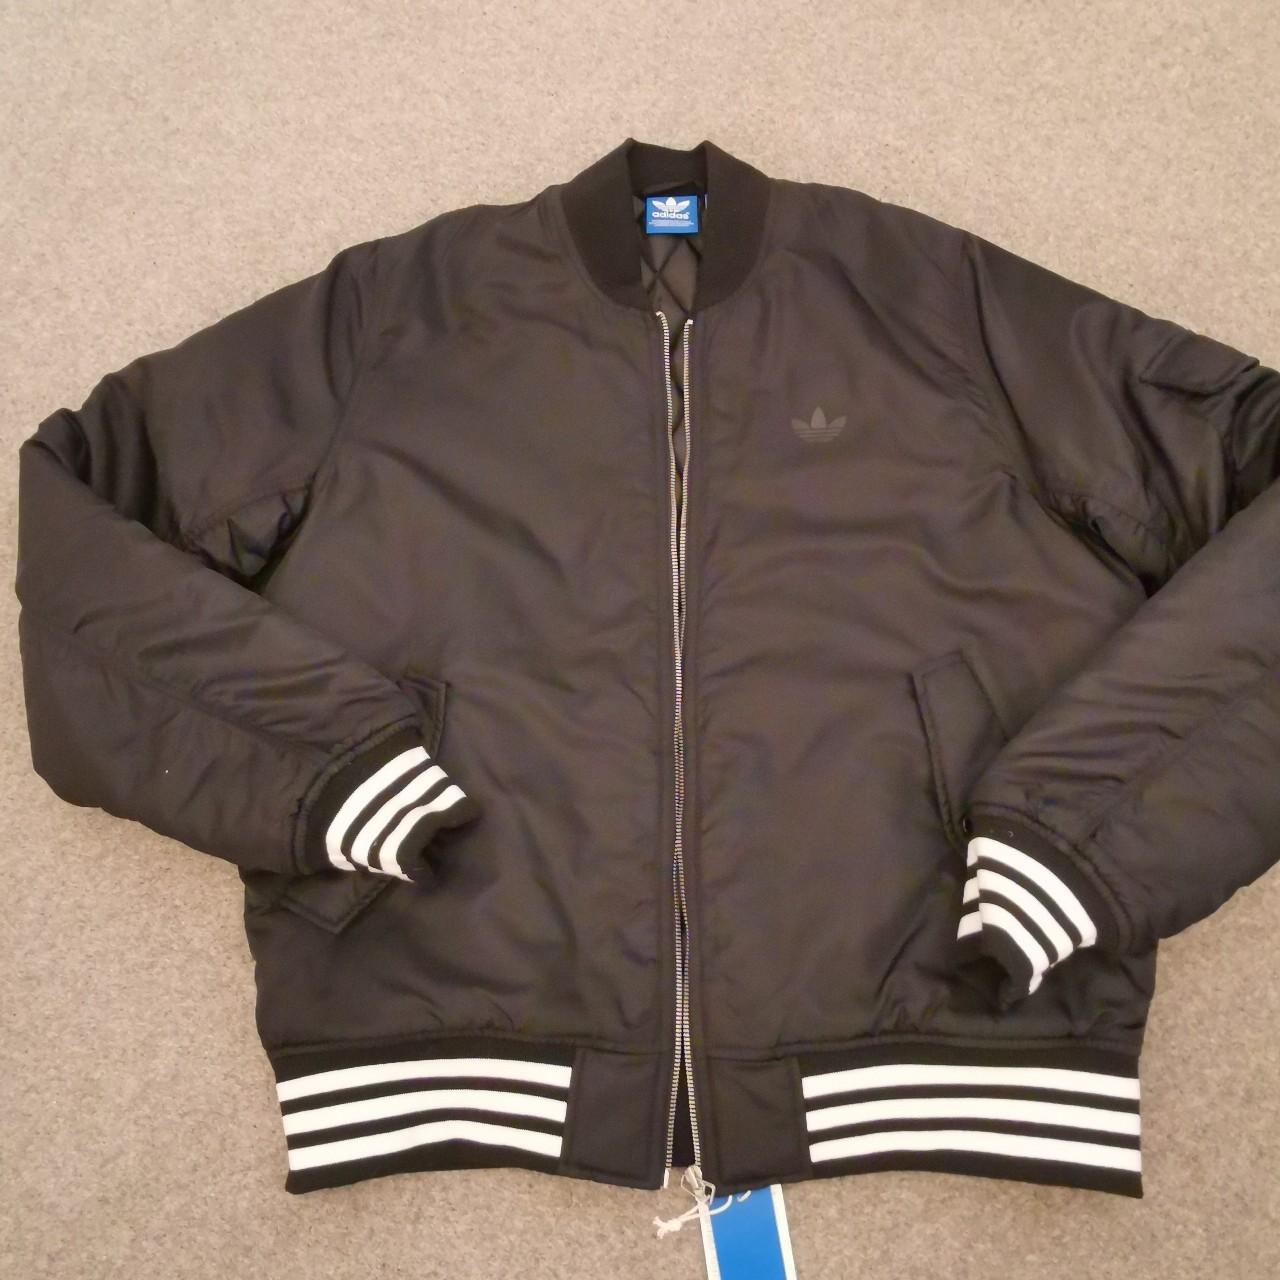 Adidas Adidas originals 25 × Nigo bomber jacket never worn